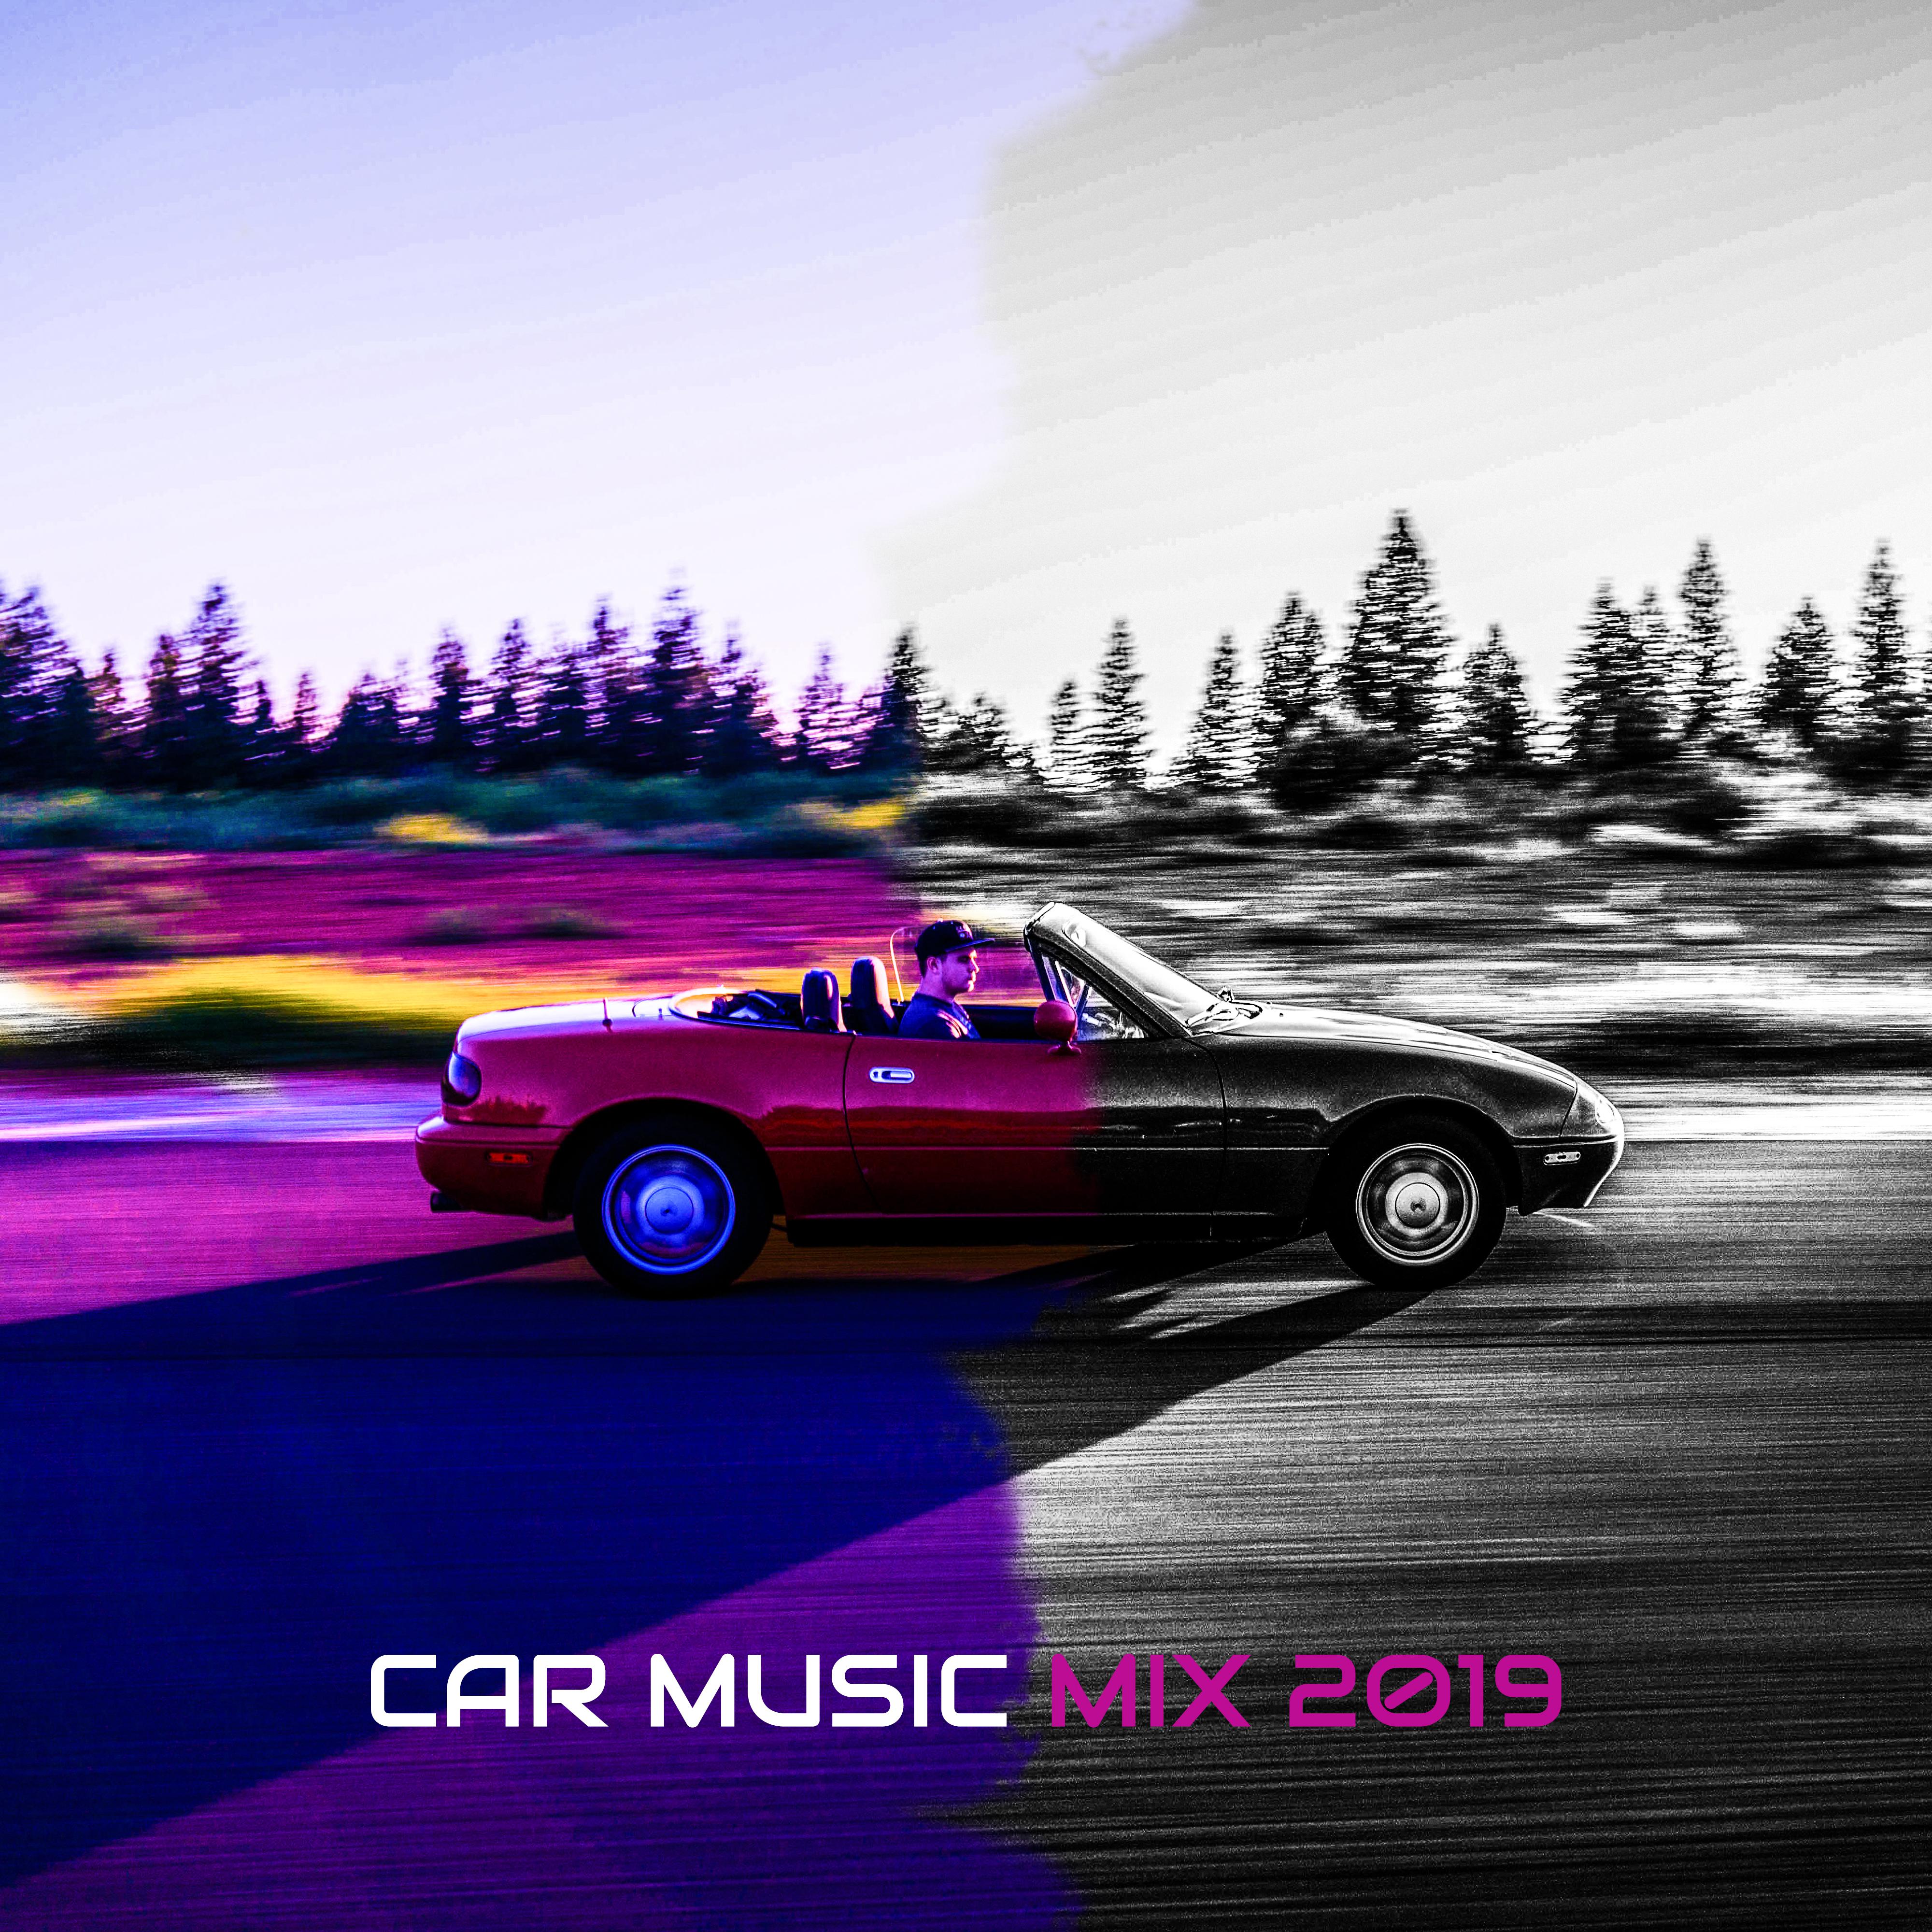 Car Music Mix 2019 – Car Beats, Deep Relaxation, Summer Music 2019, Relax Zone, Dance Hits